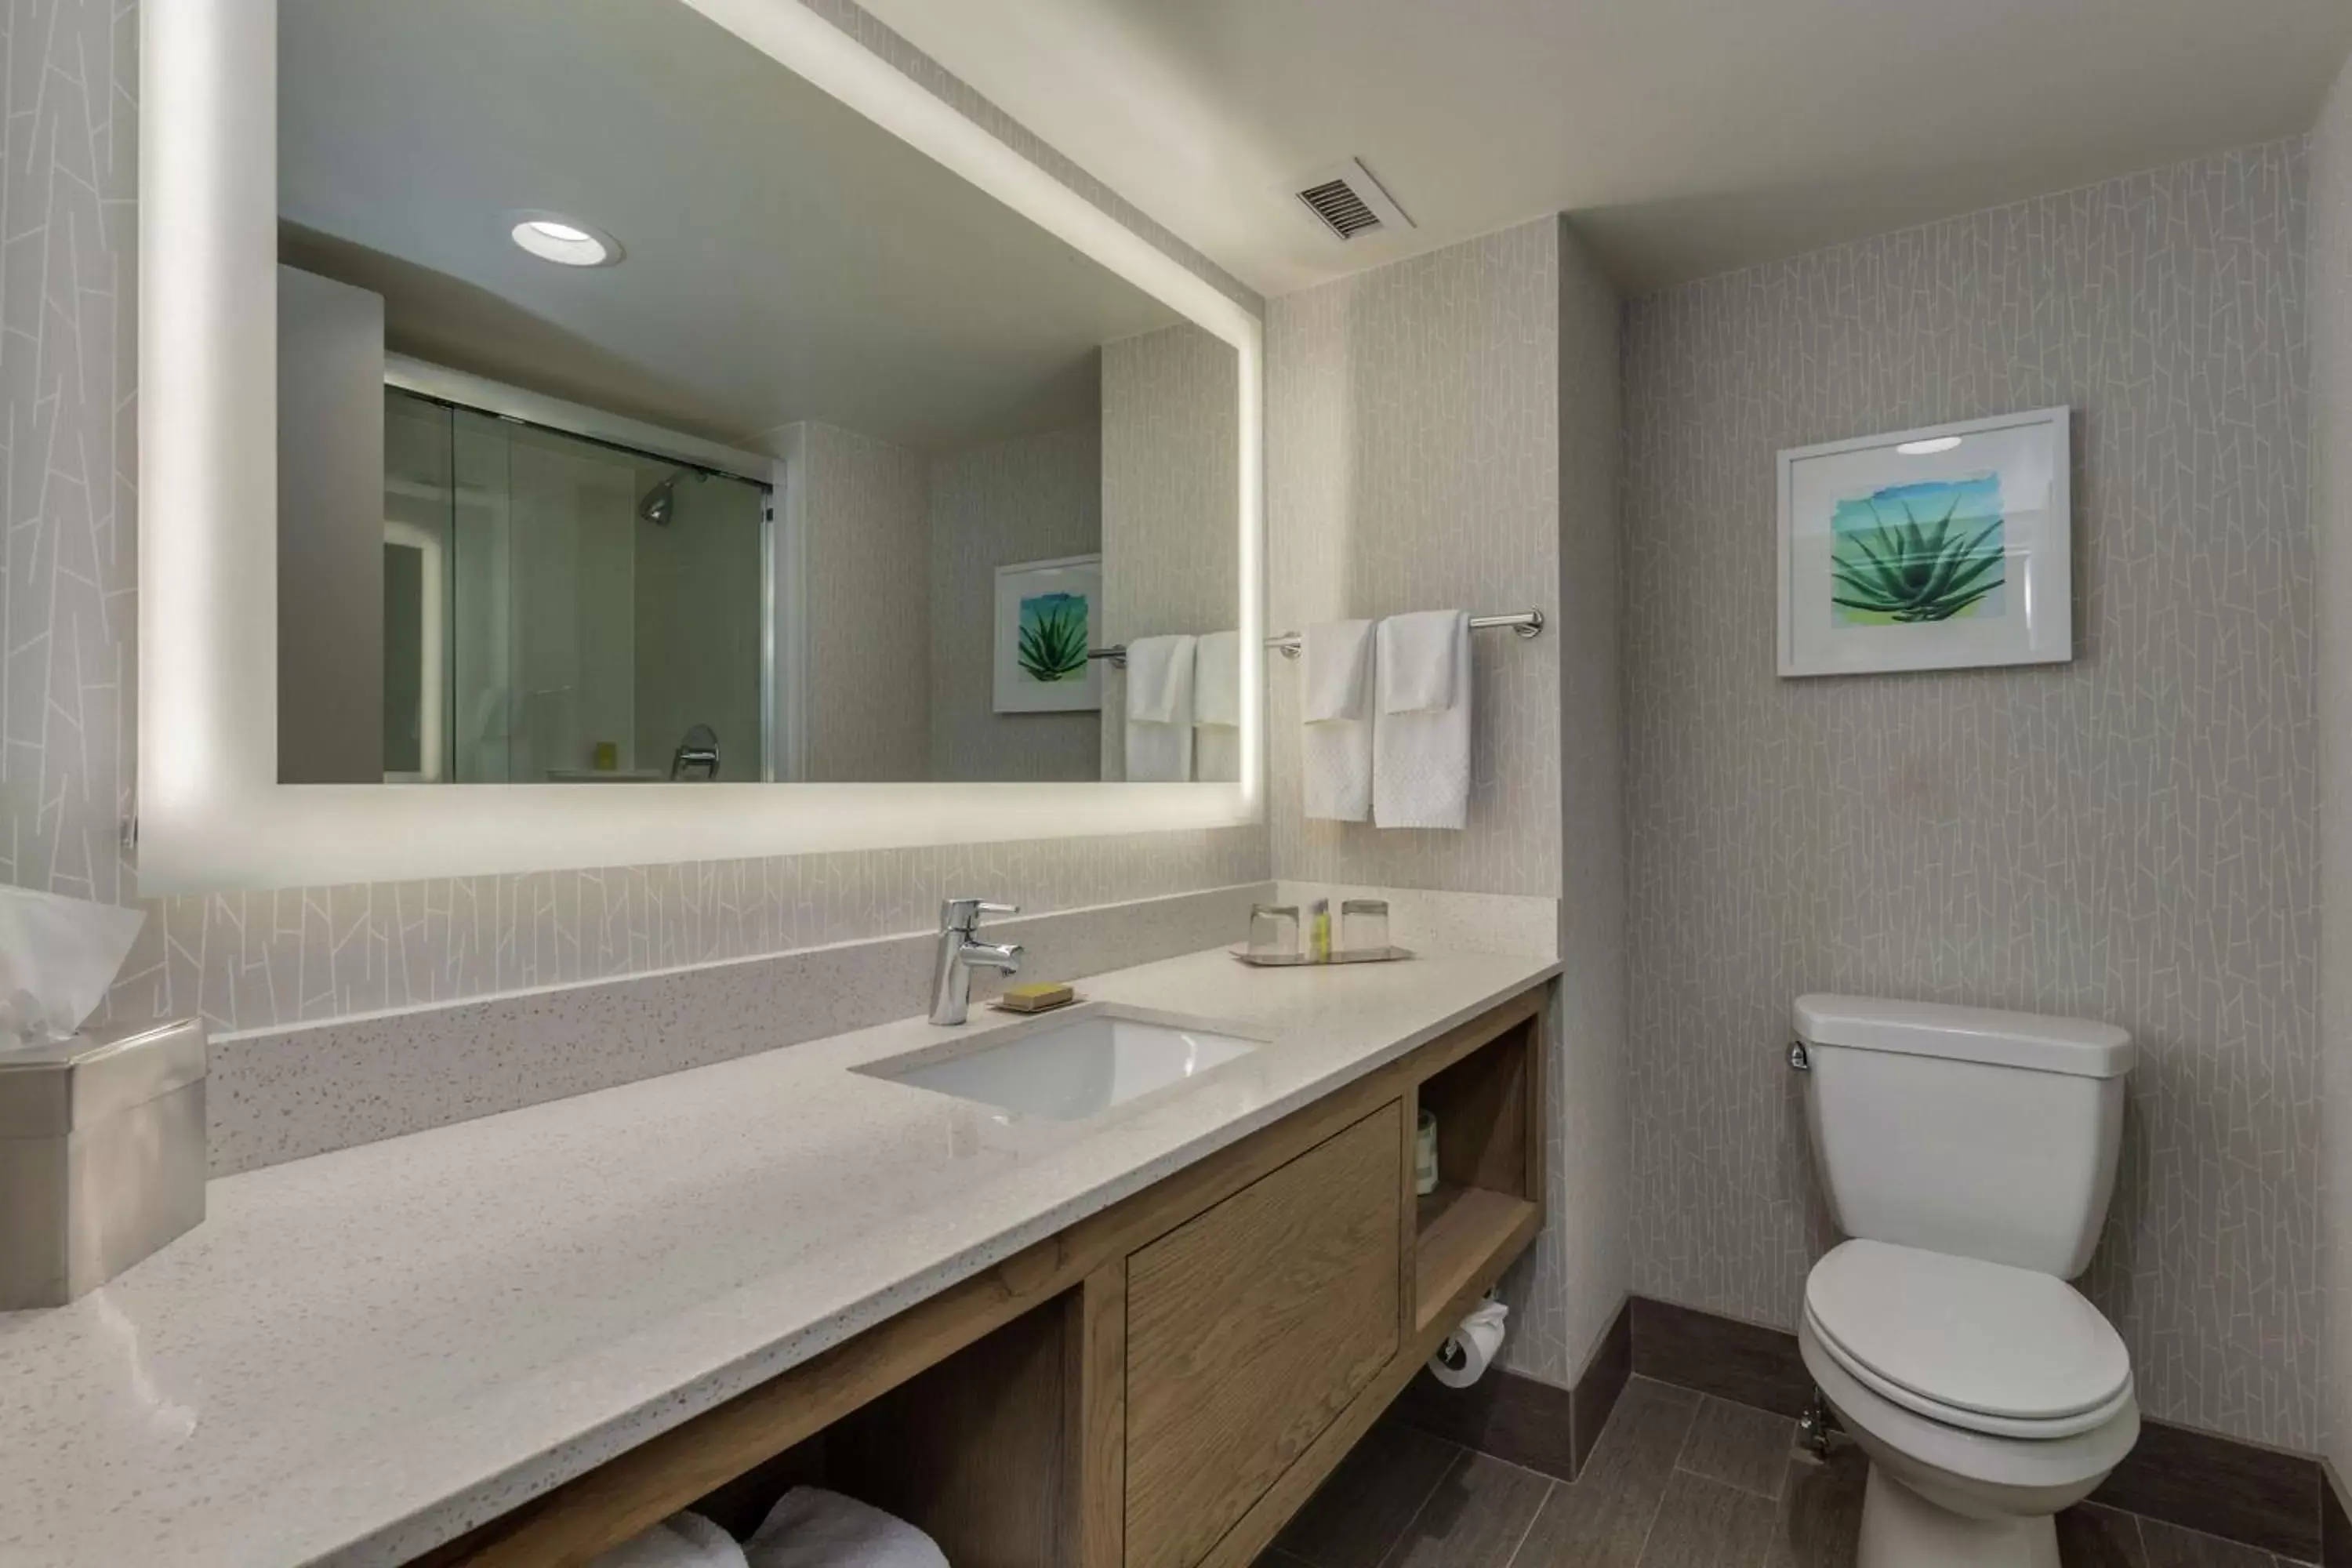 Bathroom in DoubleTree by Hilton Chandler Phoenix, AZ